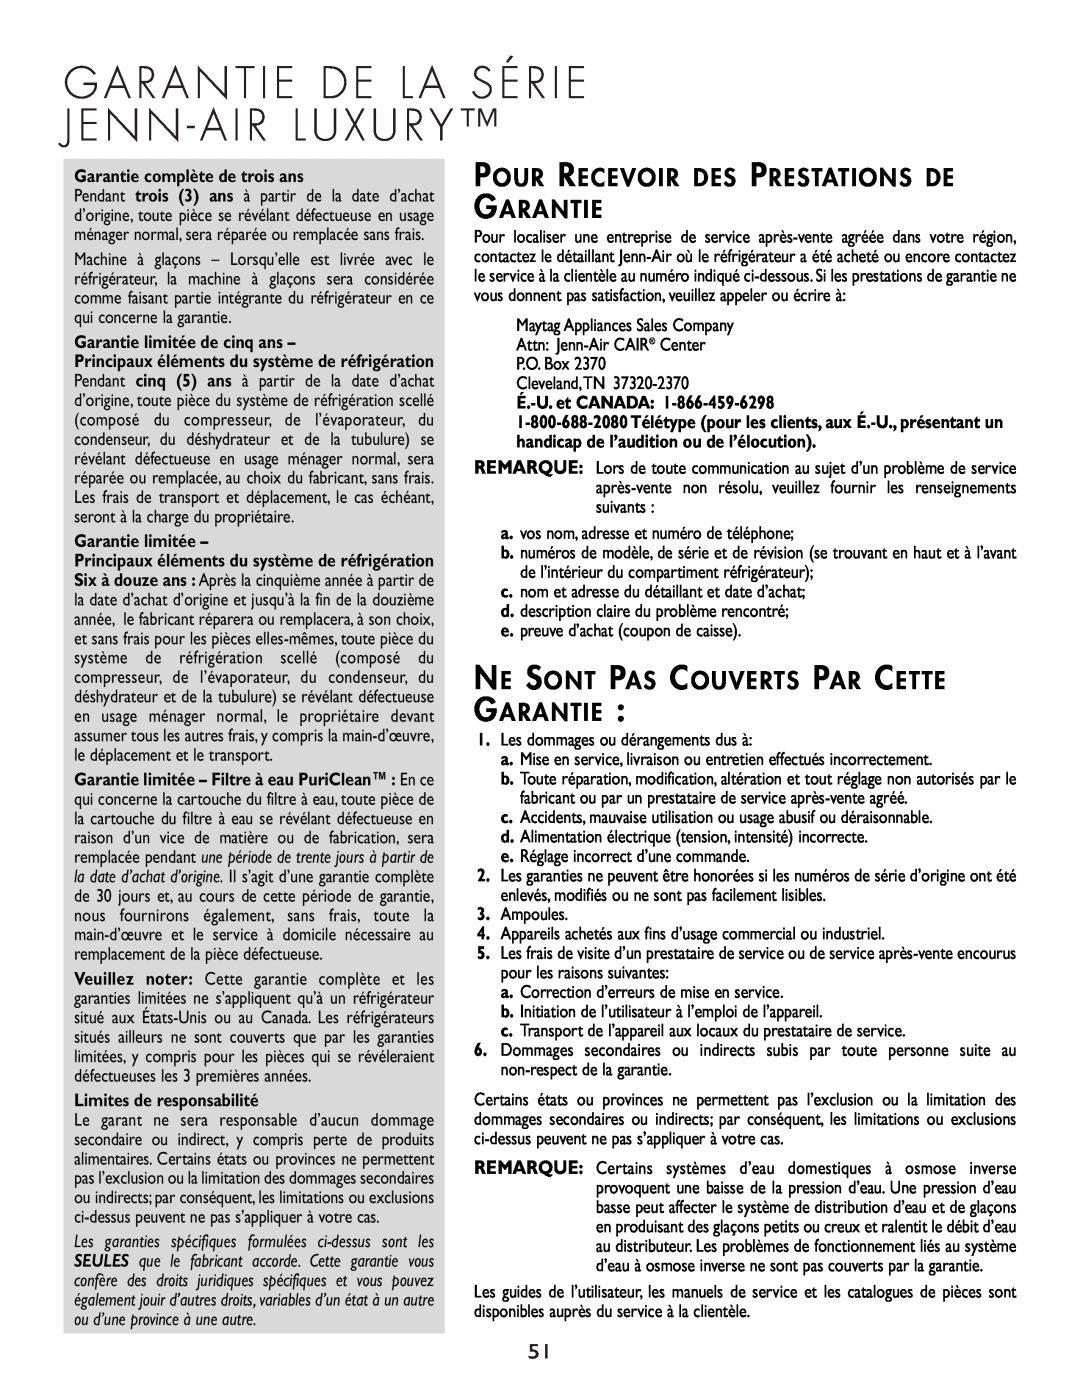 Cuno 111405-1 manual Pour Recevoir Des Prestations De Garantie, Ne Sont Pas Couverts Par Cette Garantie, Garantie limitée 